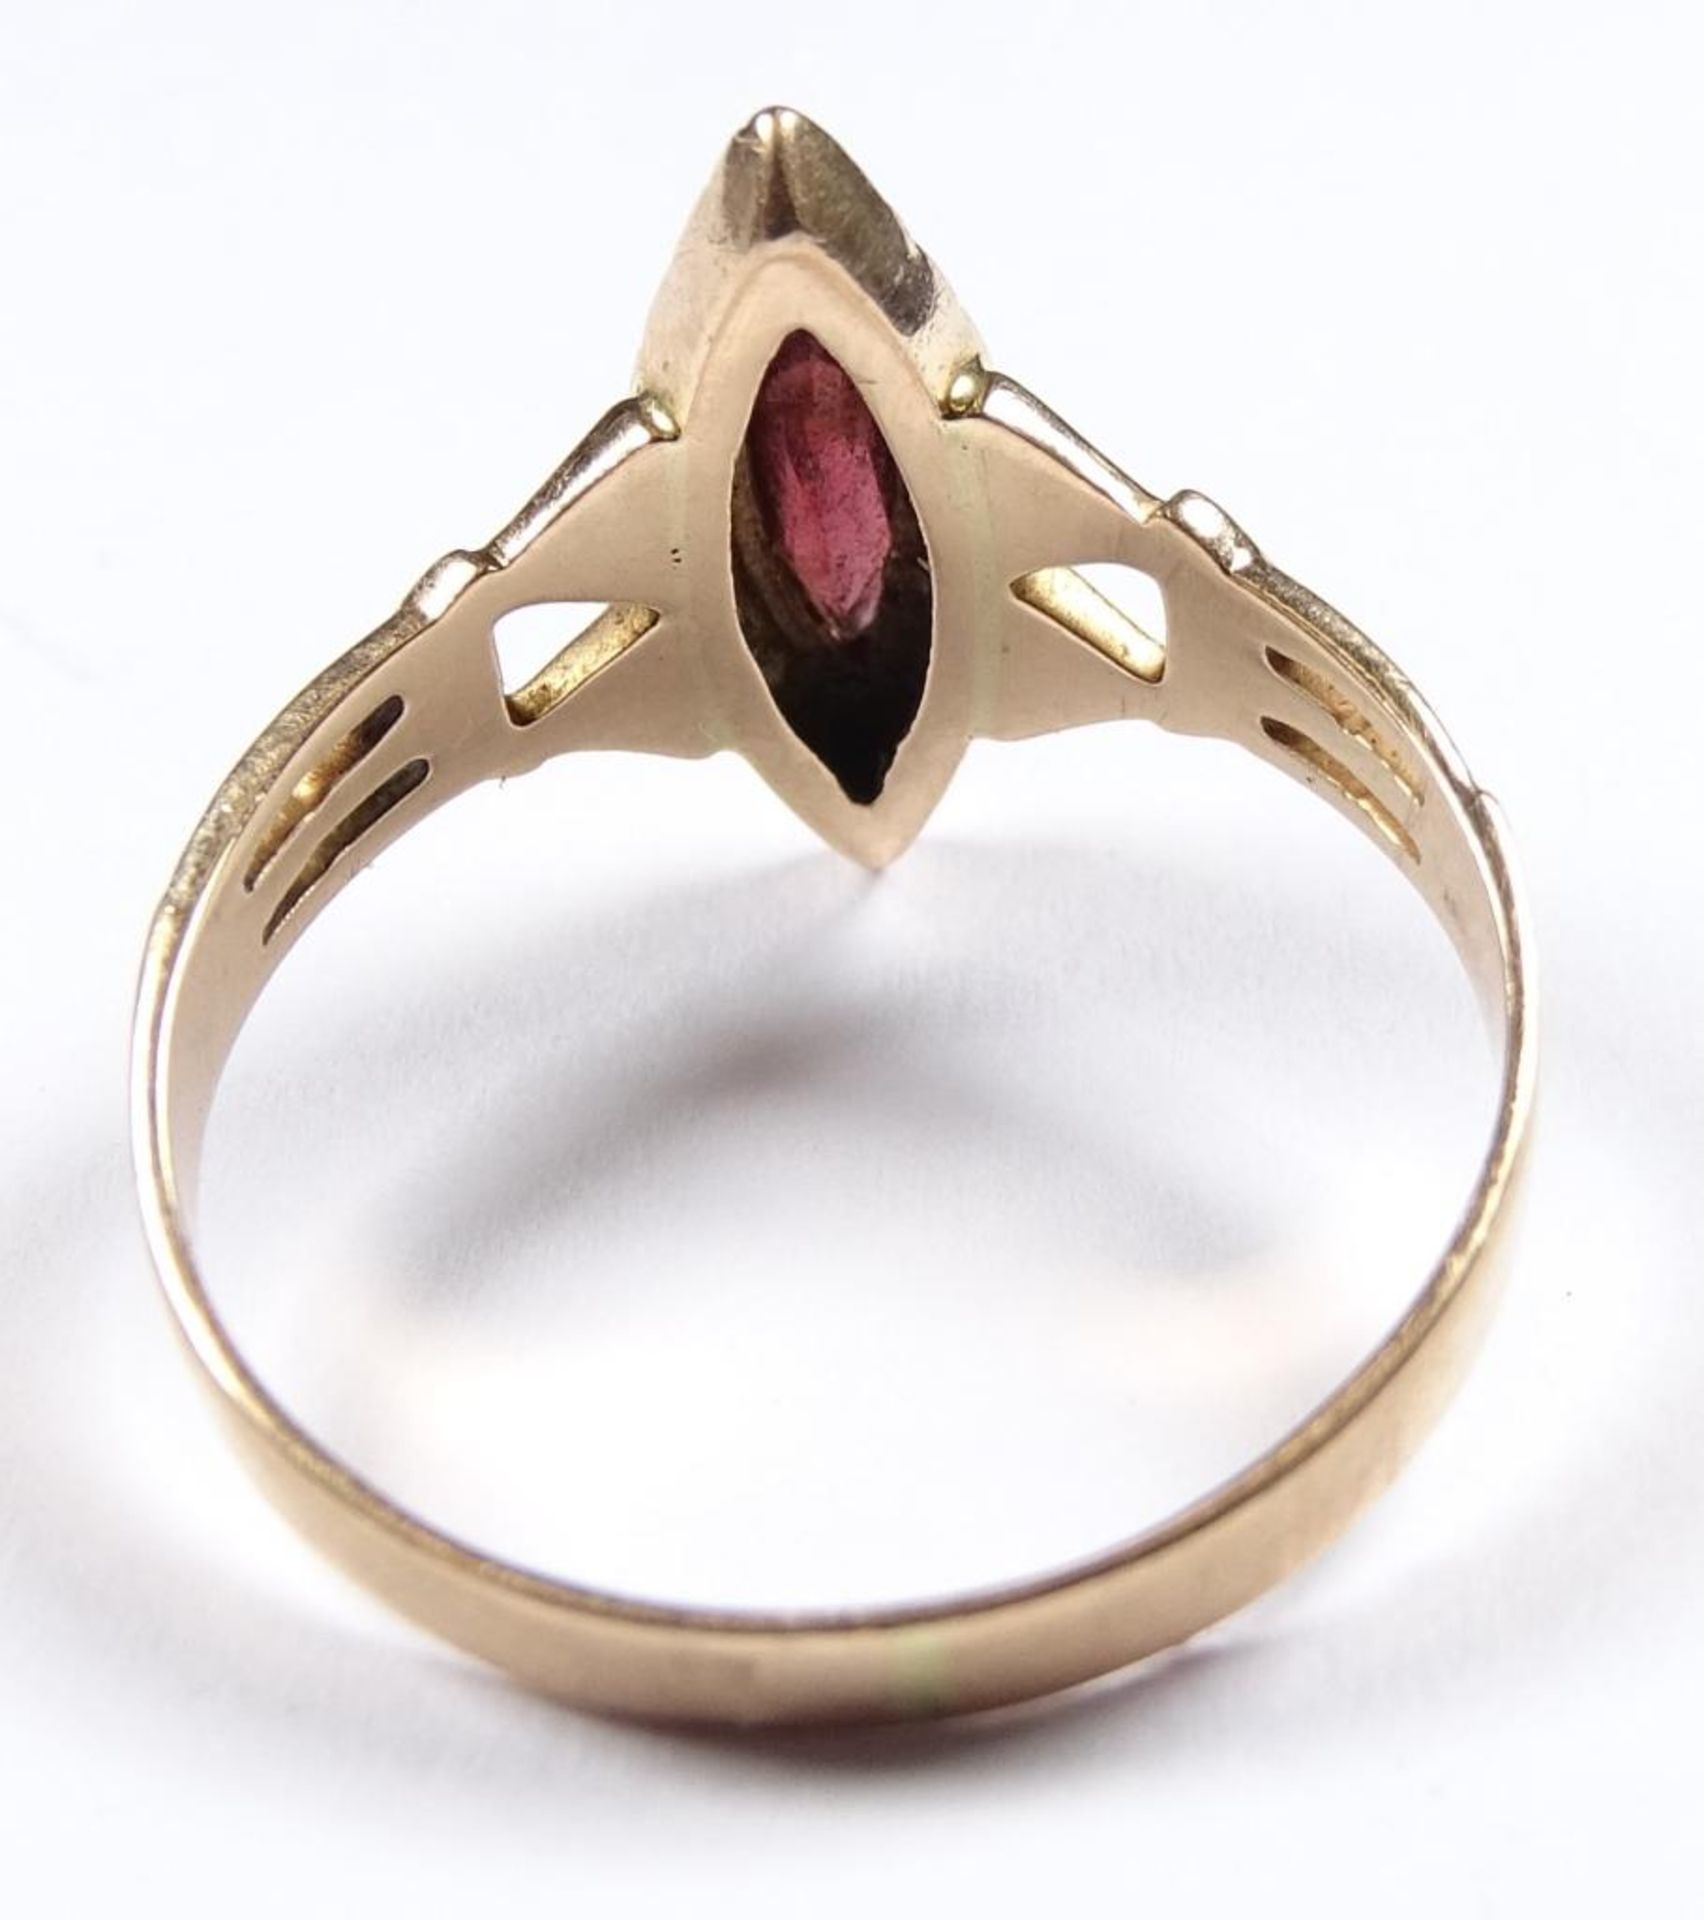 Art Deco Ring mit rotem Schmuckstein und Saatperlen RsG 585/000 2,3gr., Ringkopf 1,6x0,6cm, RG 56 - Bild 4 aus 4